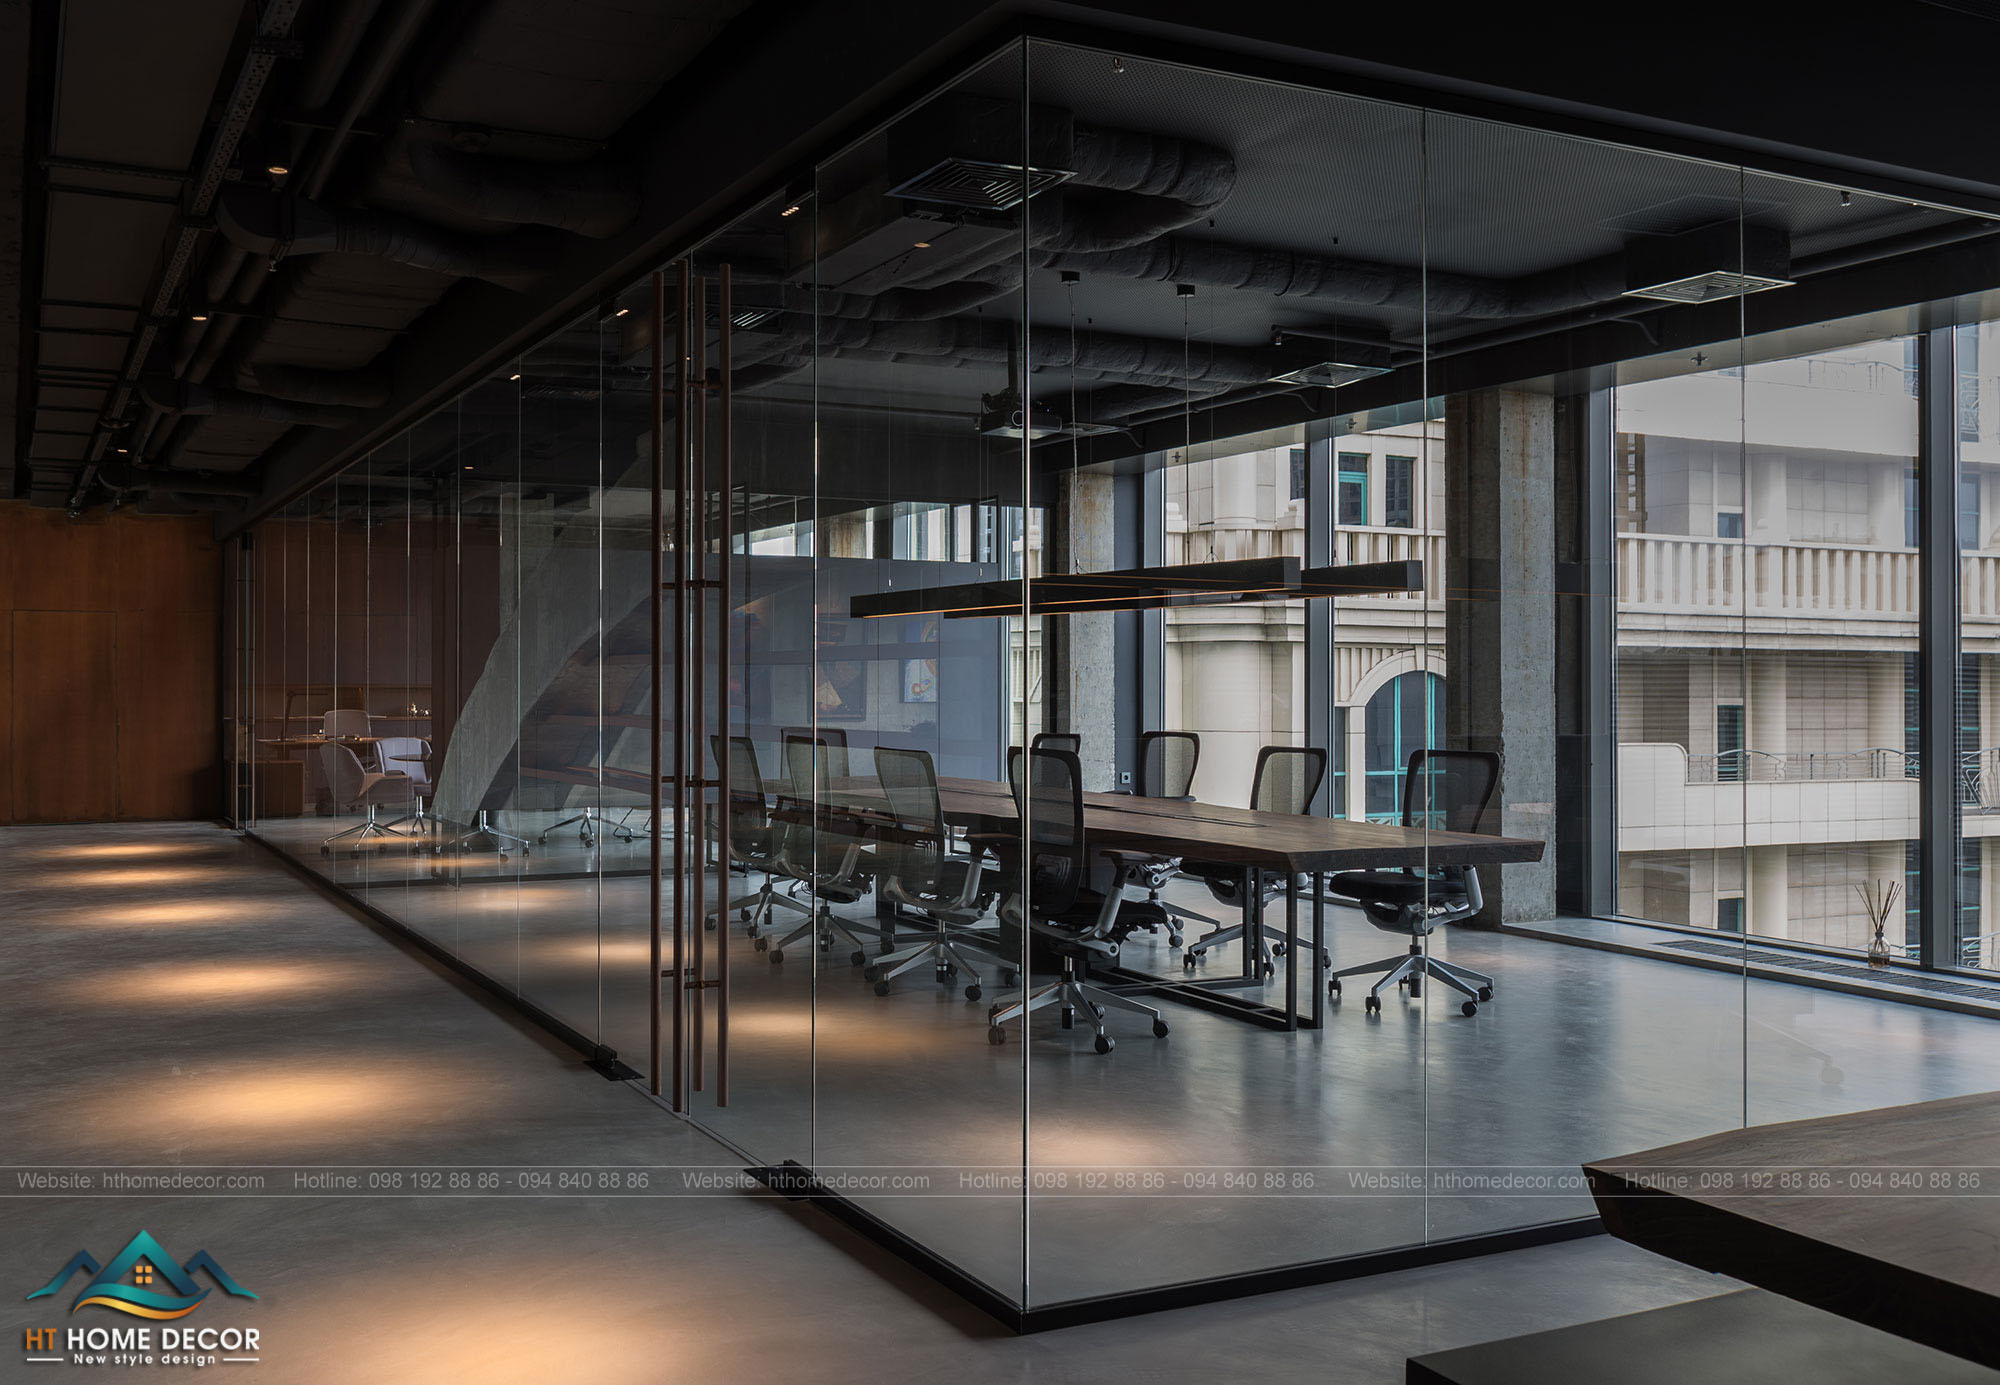 Phòng làm việc tách riêng biệt sử dụng vách ngăn bằng kính trong suốt, tạo cho không gian thoáng và rộng rãi hiện đại.